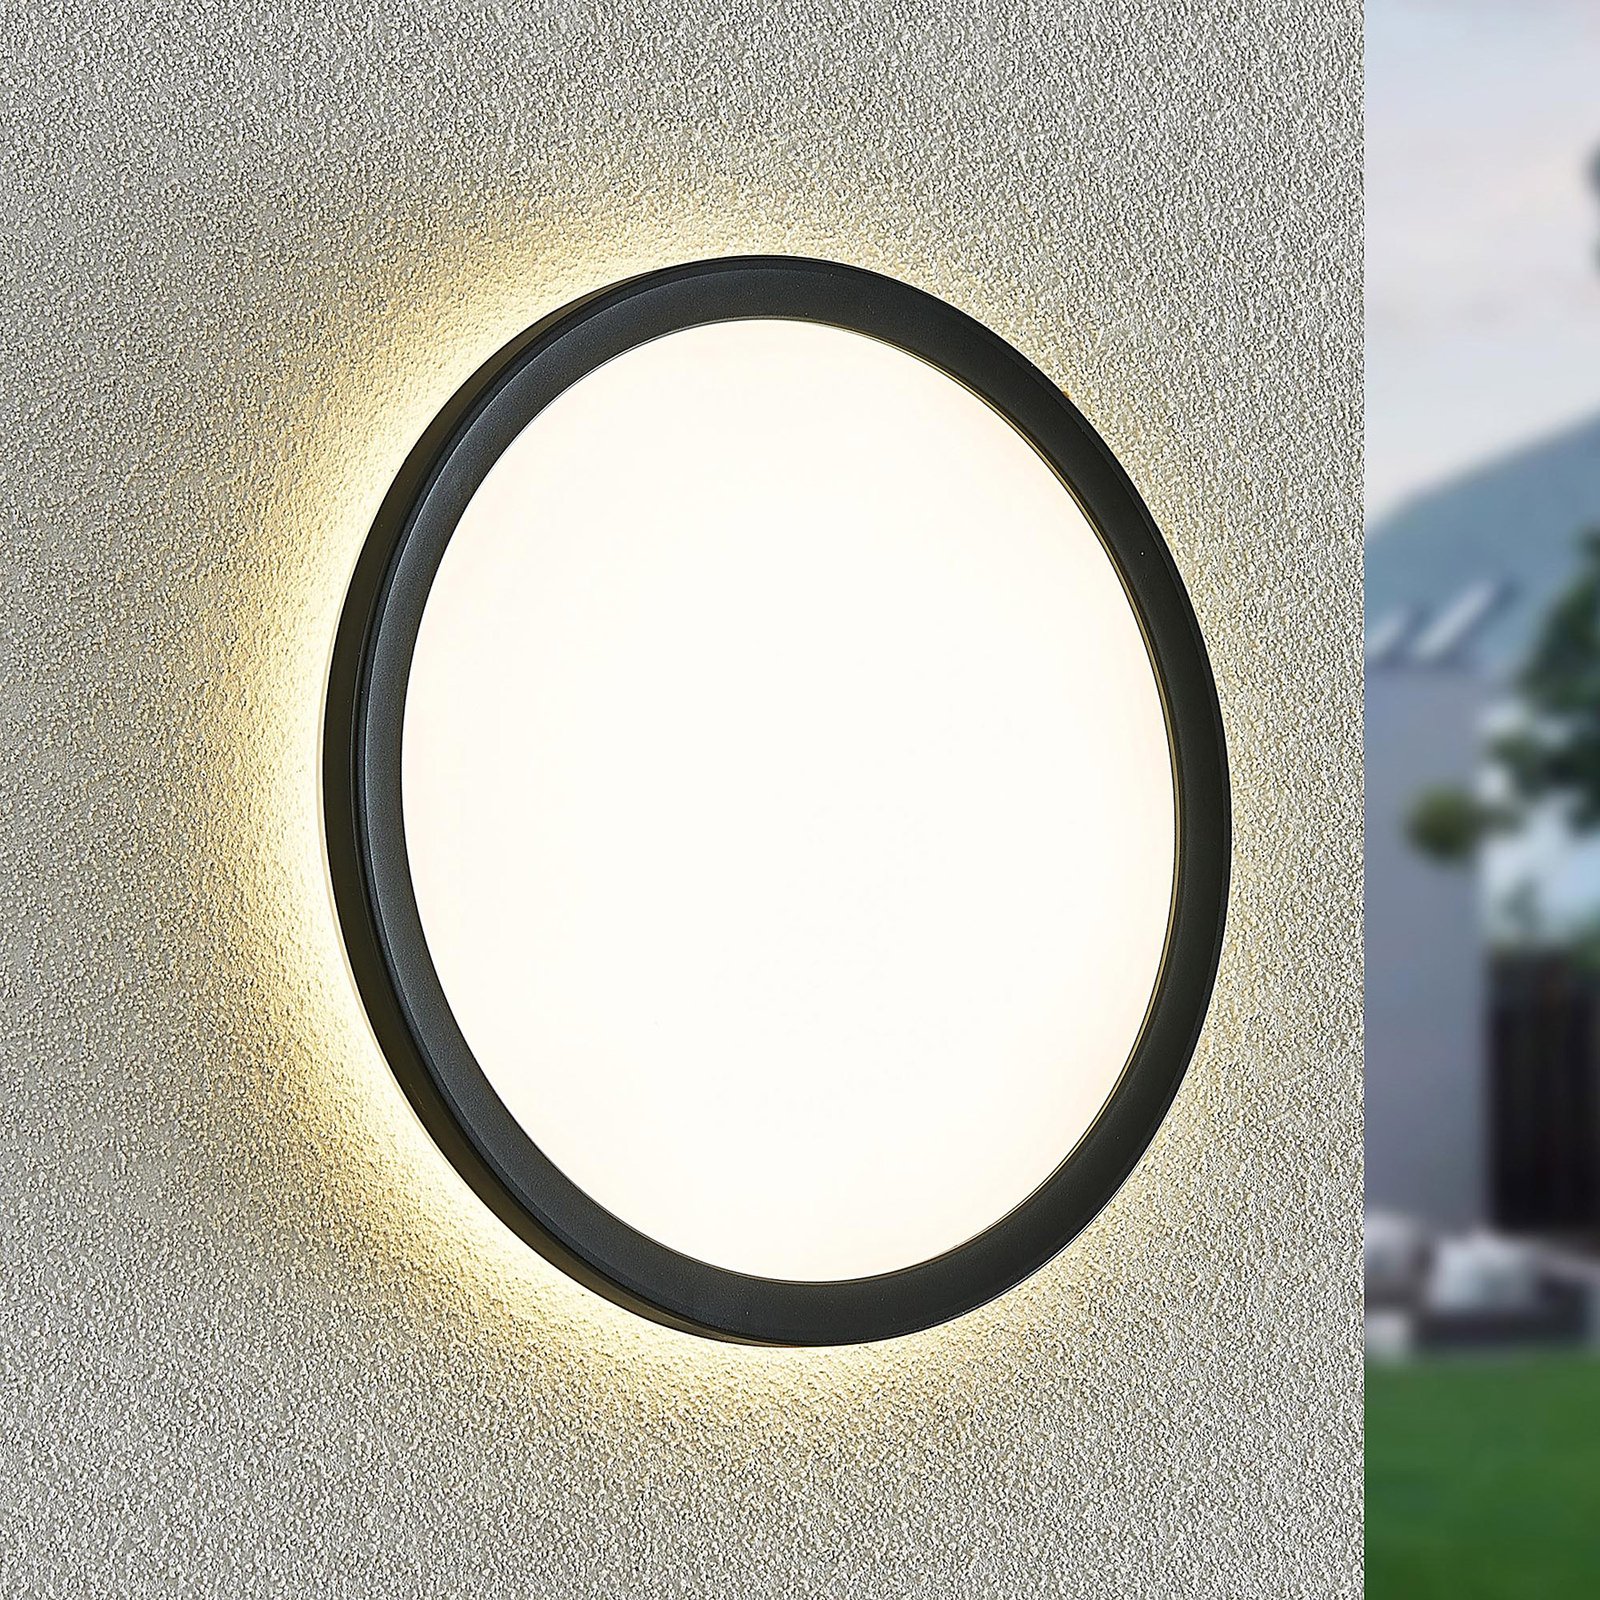 Prios Pavin aplique LED para exterior, número casa